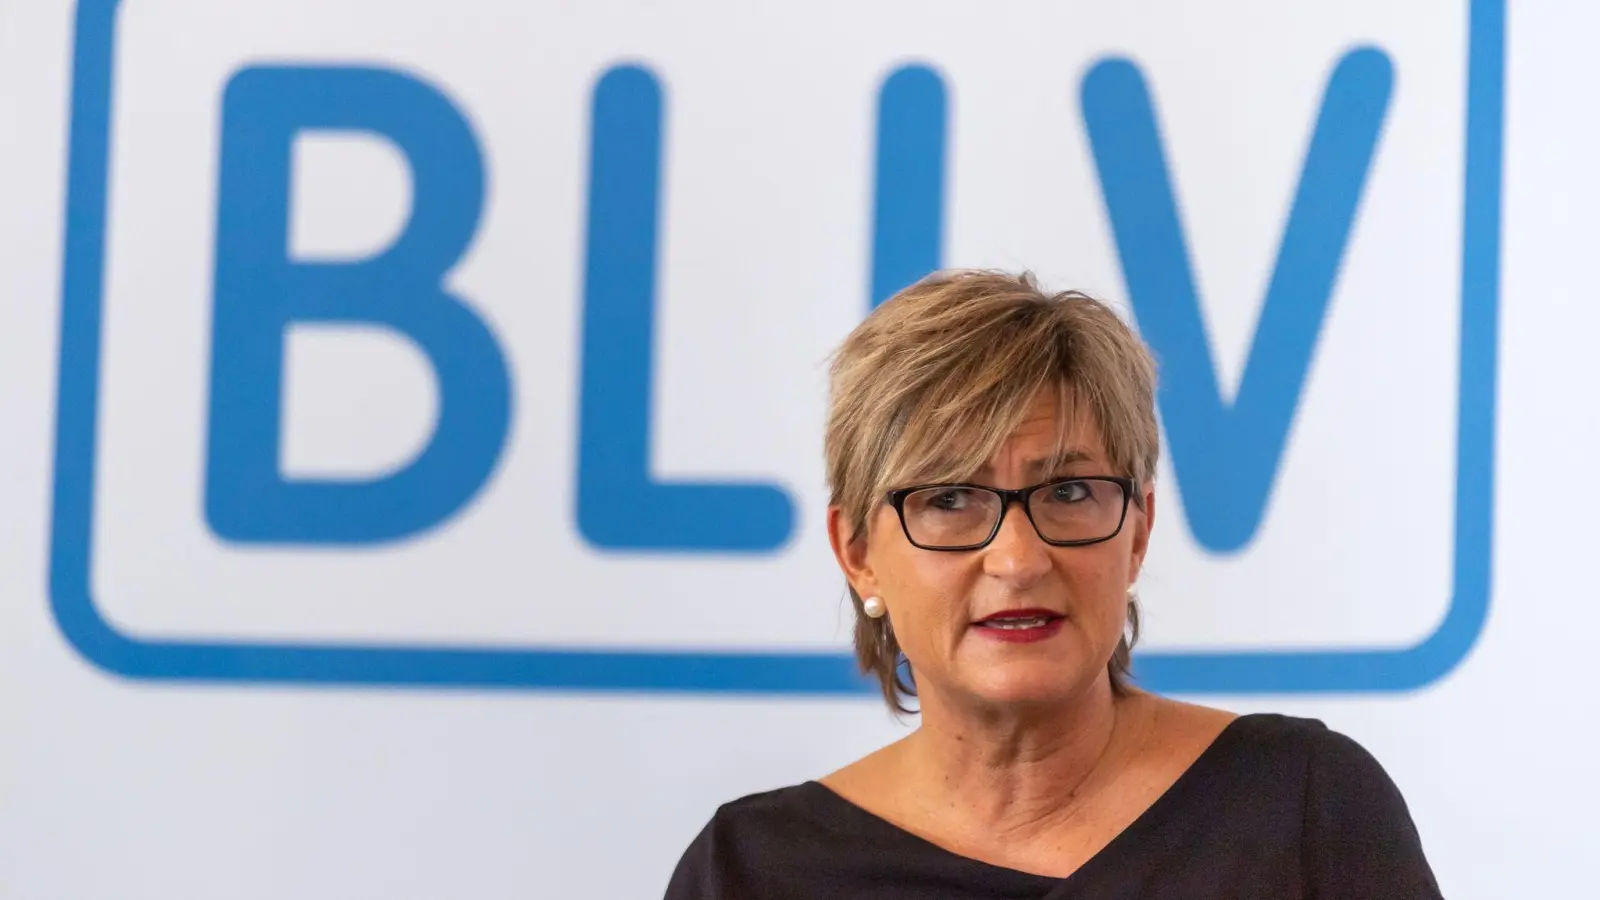 Simone Fleischmann, Präsidentin des BLLV, spricht während einer Pressekonferenz. (Foto: Peter Kneffel/dpa/Archivbild)